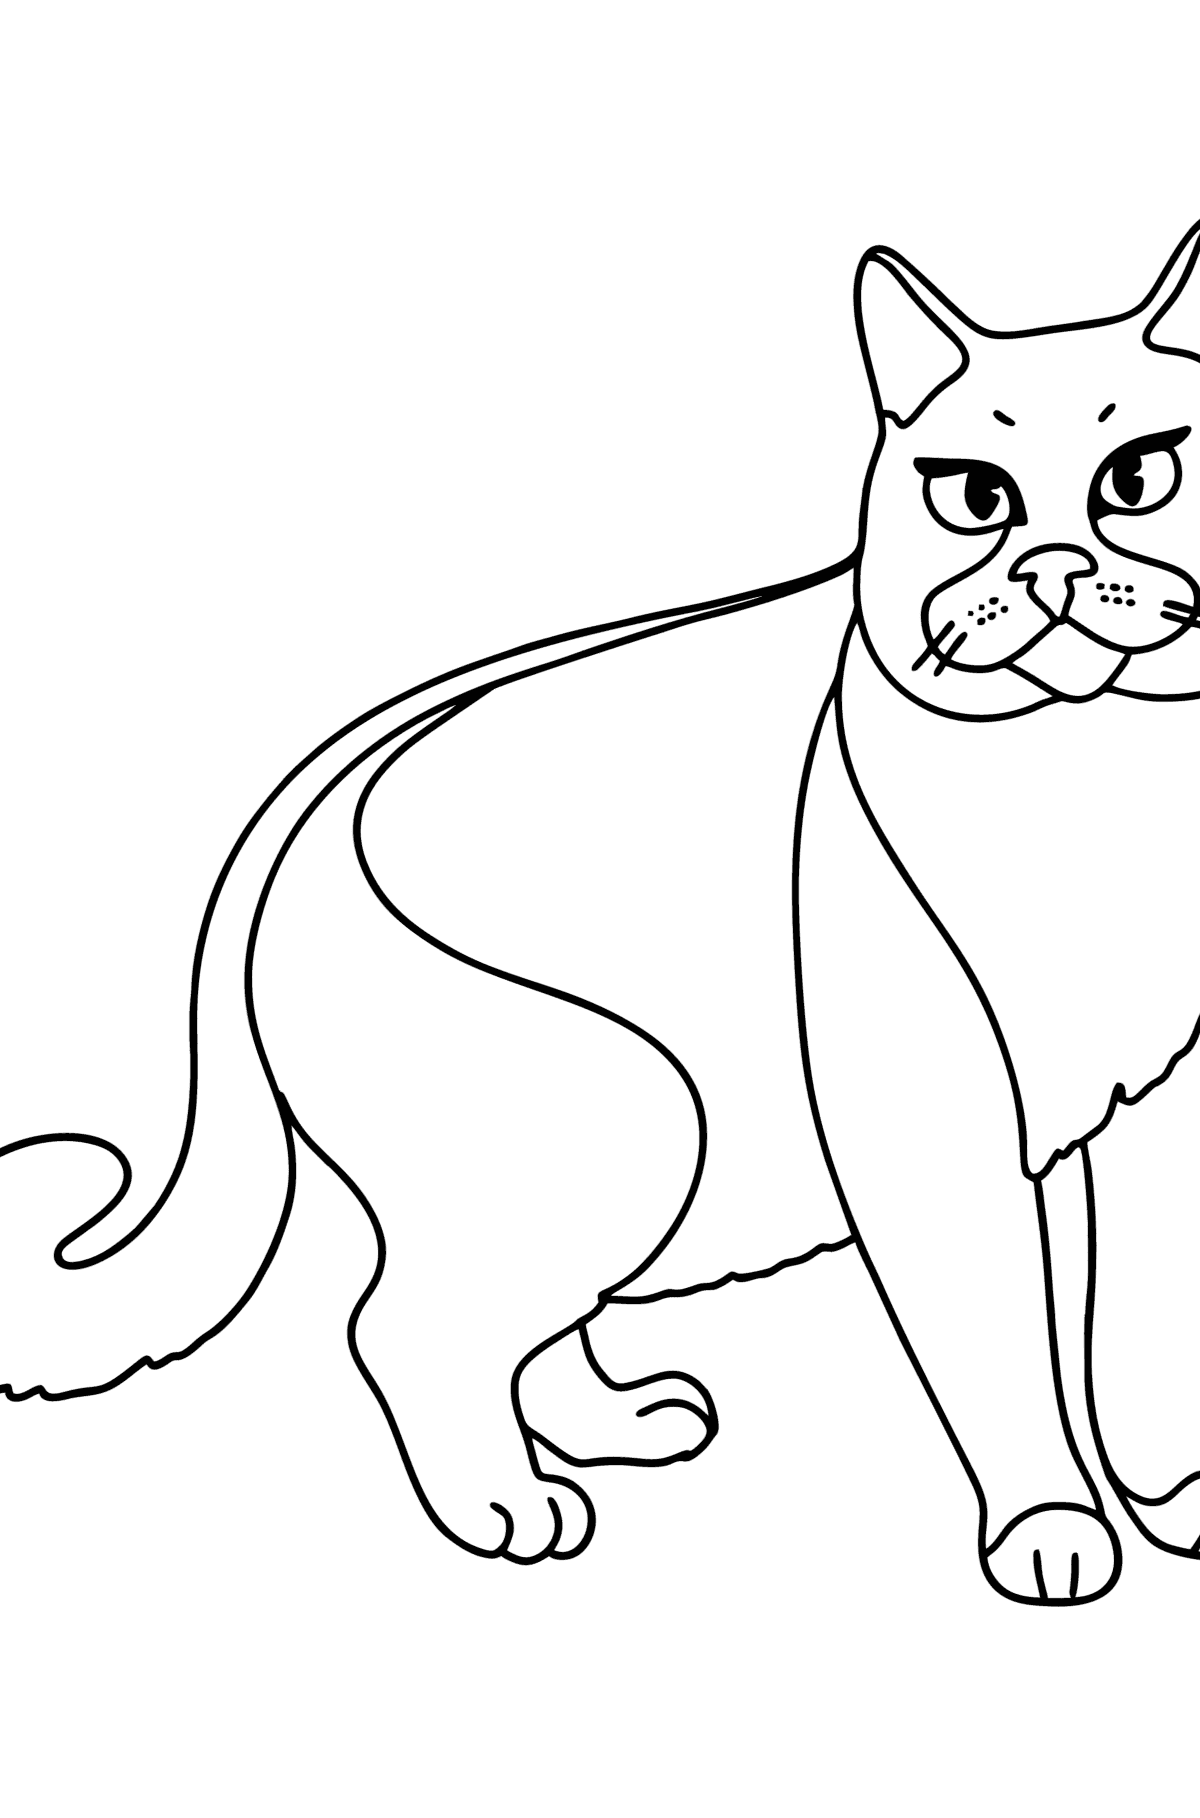 Boyama sayfası chartreuse kedi - Boyamalar çocuklar için